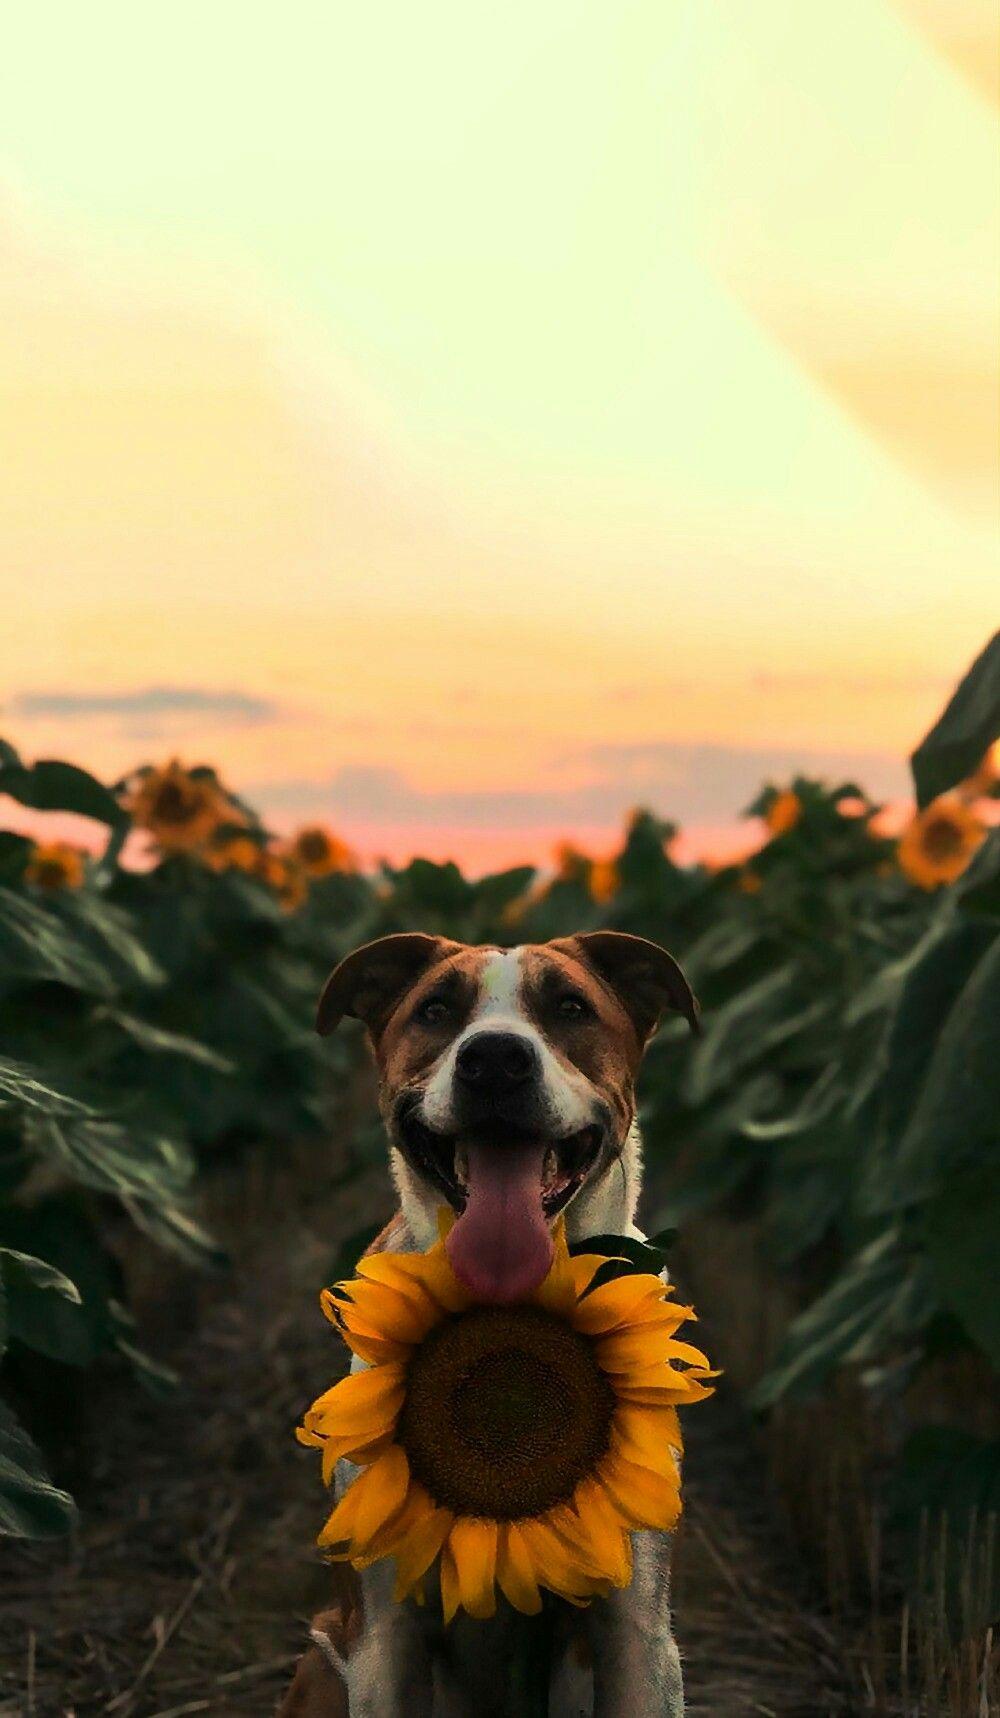 background. Dog wallpaper iphone, Sunflower wallpaper, Dog wallpaper